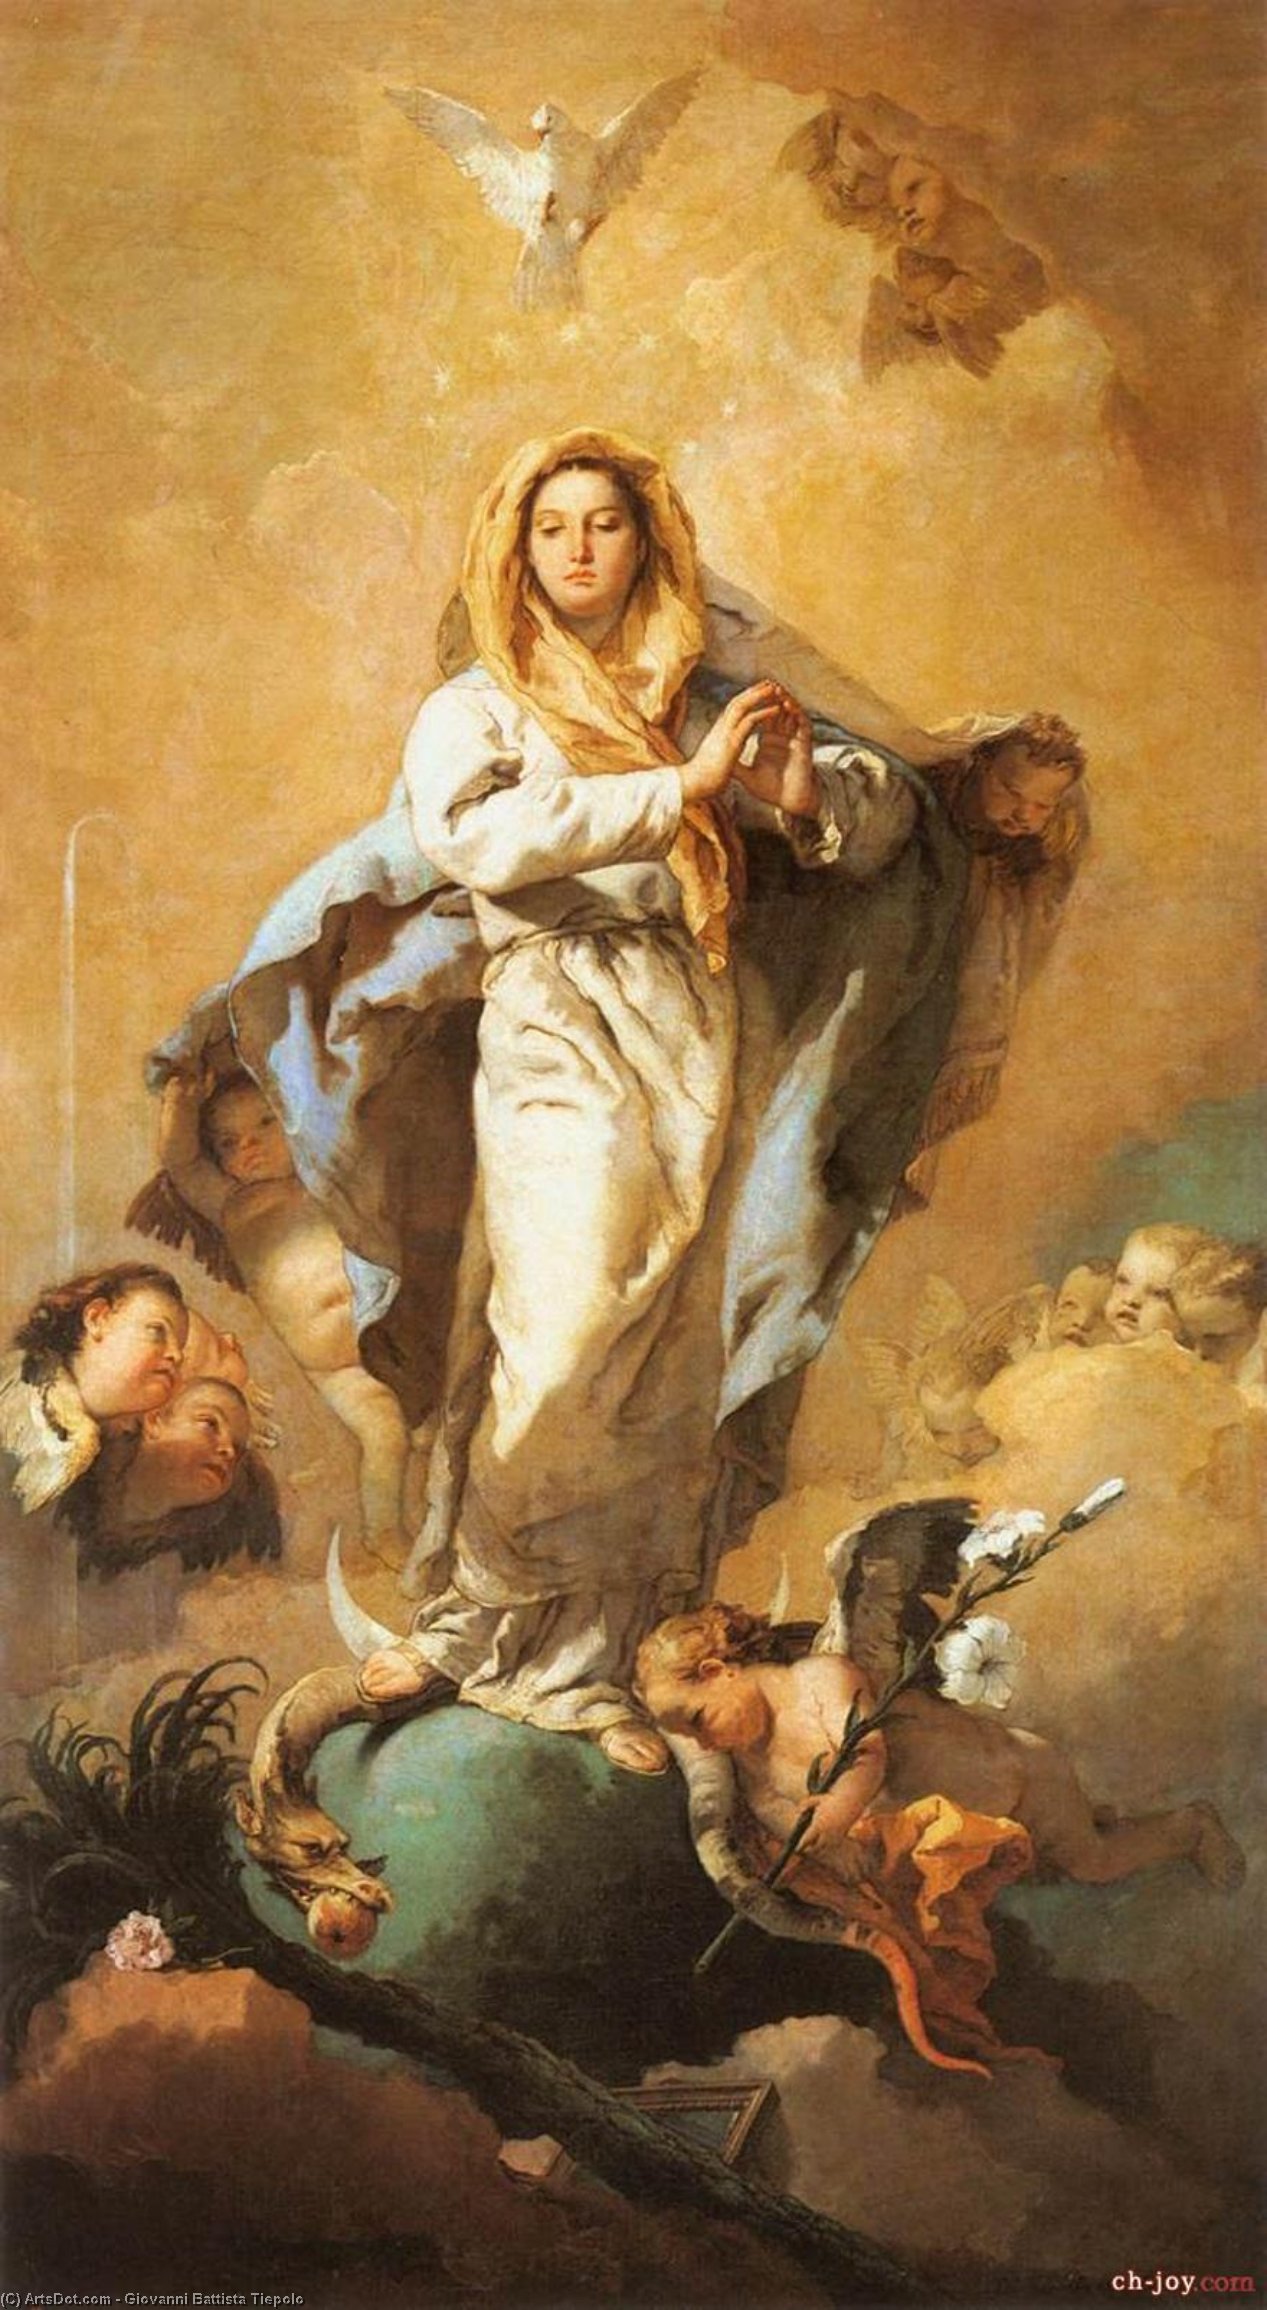 WikiOO.org - אנציקלופדיה לאמנויות יפות - ציור, יצירות אמנות Giovanni Battista Tiepolo - The Immaculate Conception